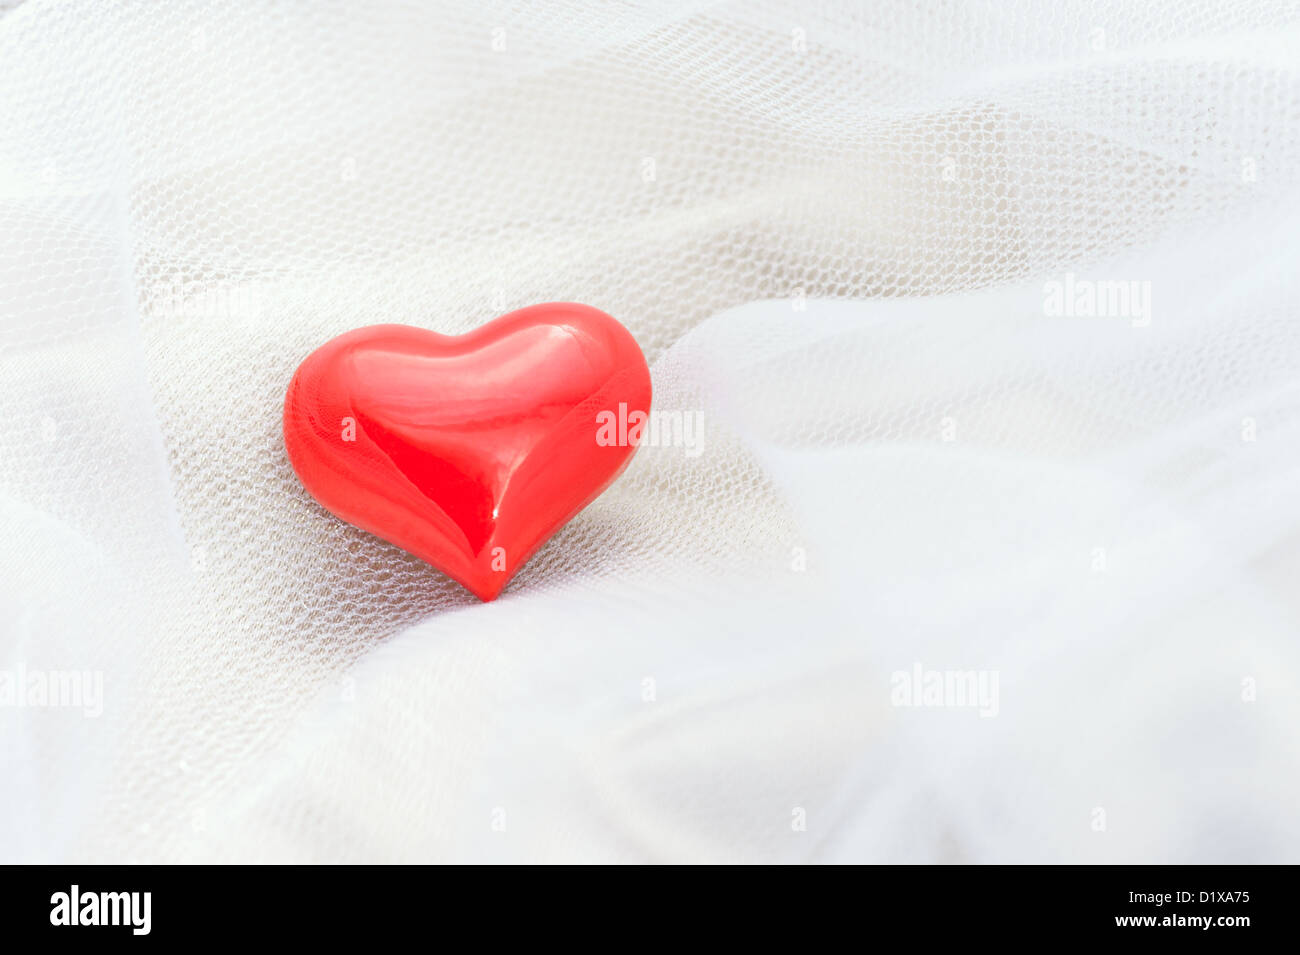 Rotes Herz auf einem weißen Schleier für romantische Anlässe aller Art Stockfoto